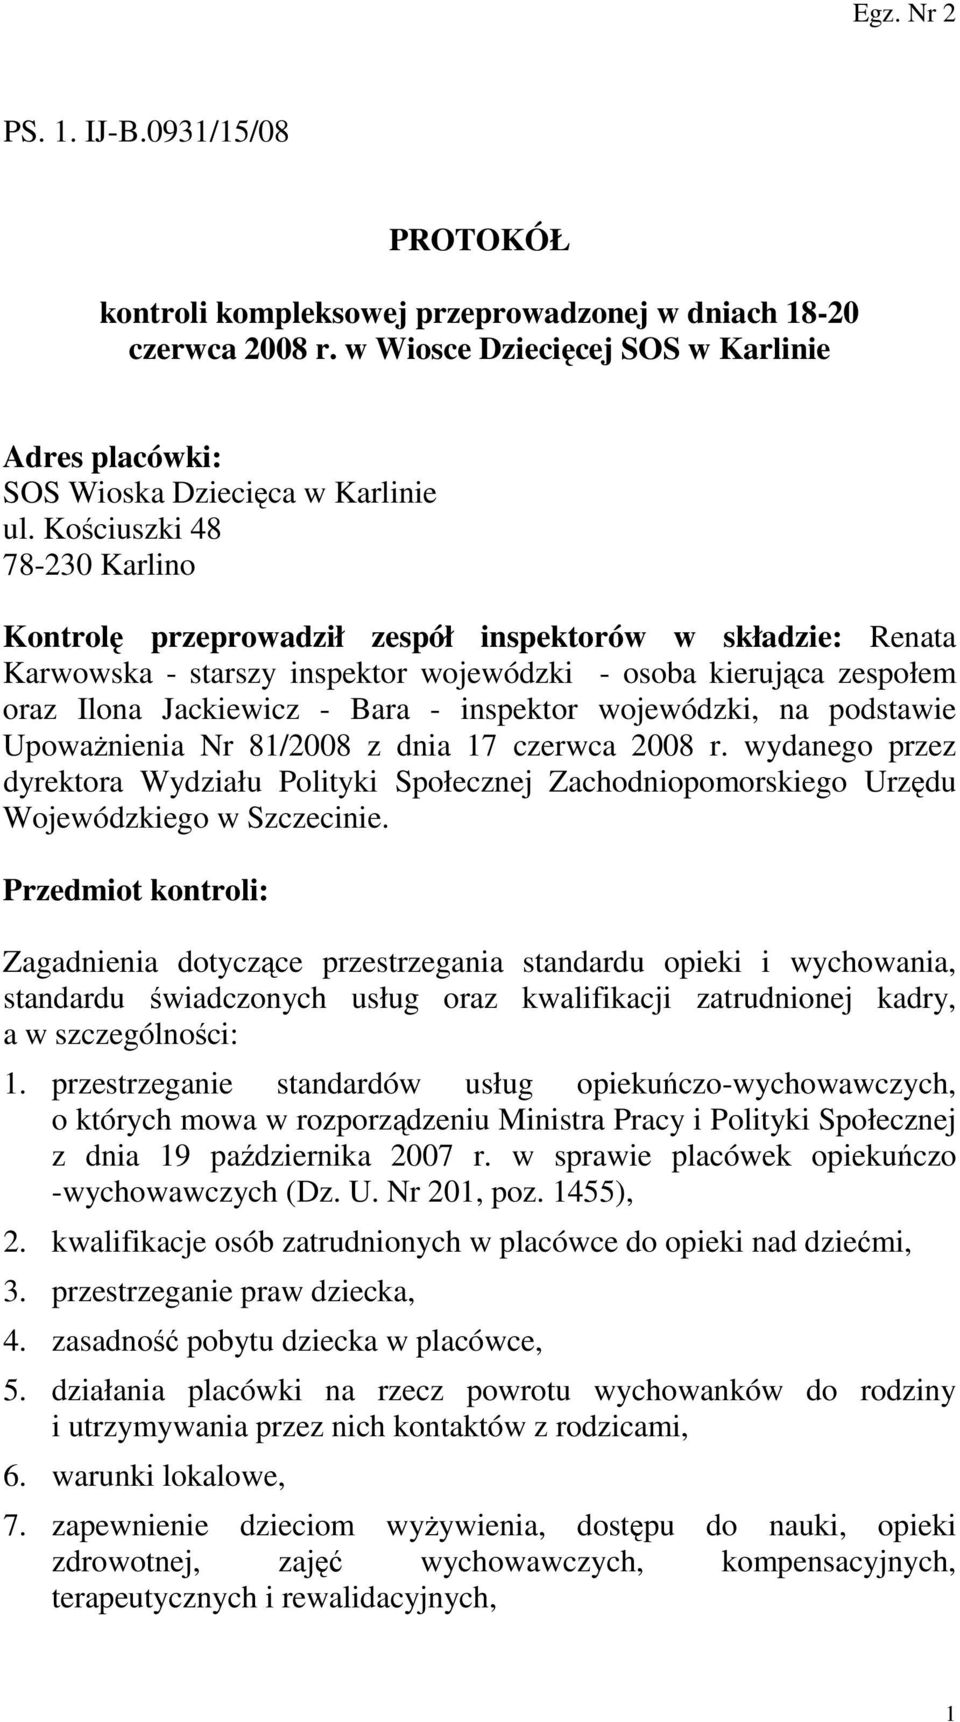 wojewódzki, na podstawie UpowaŜnienia Nr 81/2008 z dnia 17 czerwca 2008 r. wydanego przez dyrektora Wydziału Polityki Społecznej Zachodniopomorskiego Urzędu Wojewódzkiego w Szczecinie.